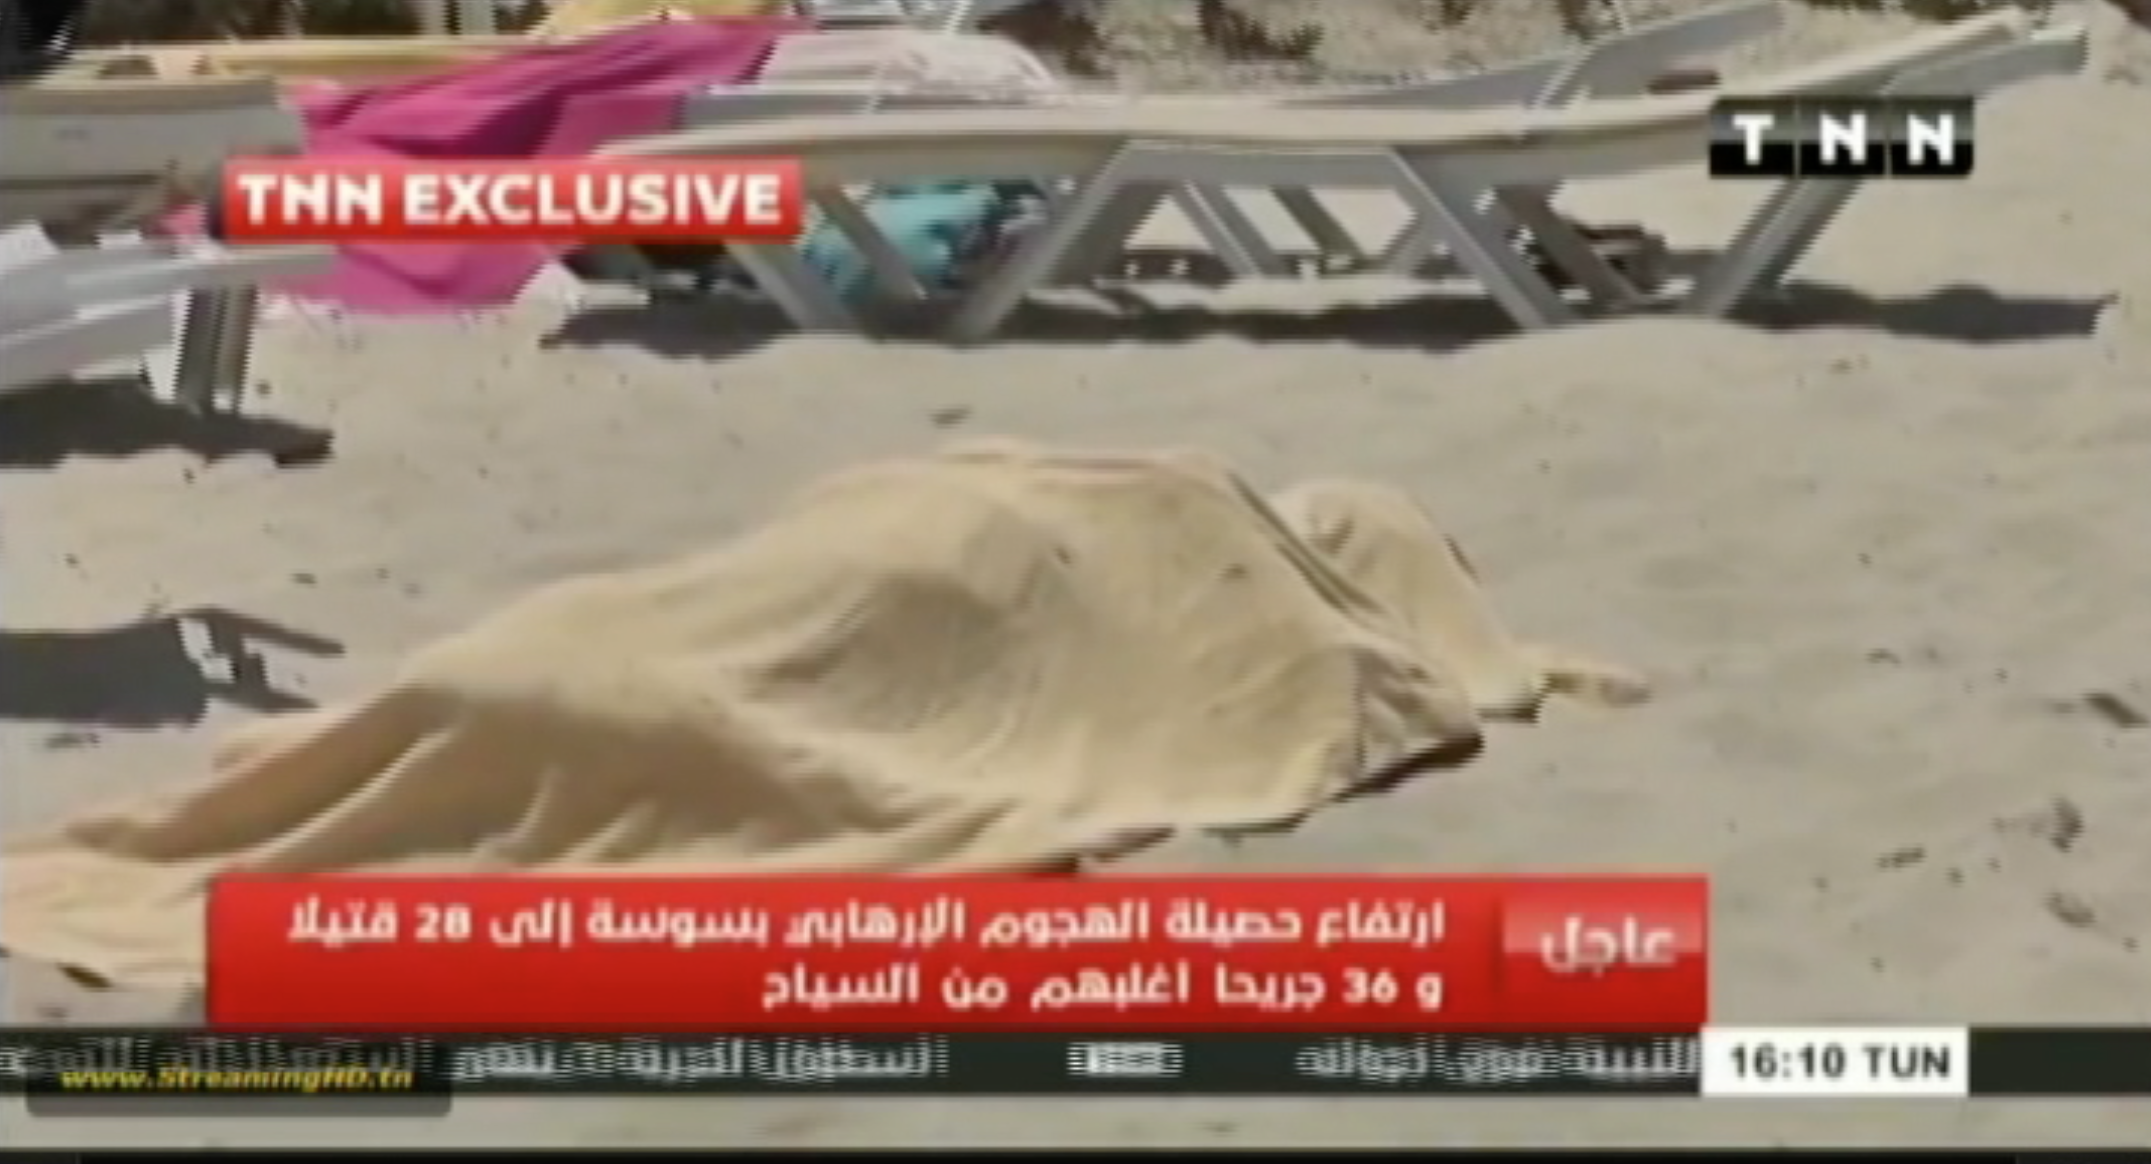 بالفيديو.. مشاهد من شاطئ فندق  امبريال مرحبا  في سوسة التونسية بعد الهجوم بلحظات - CNNArabic.com